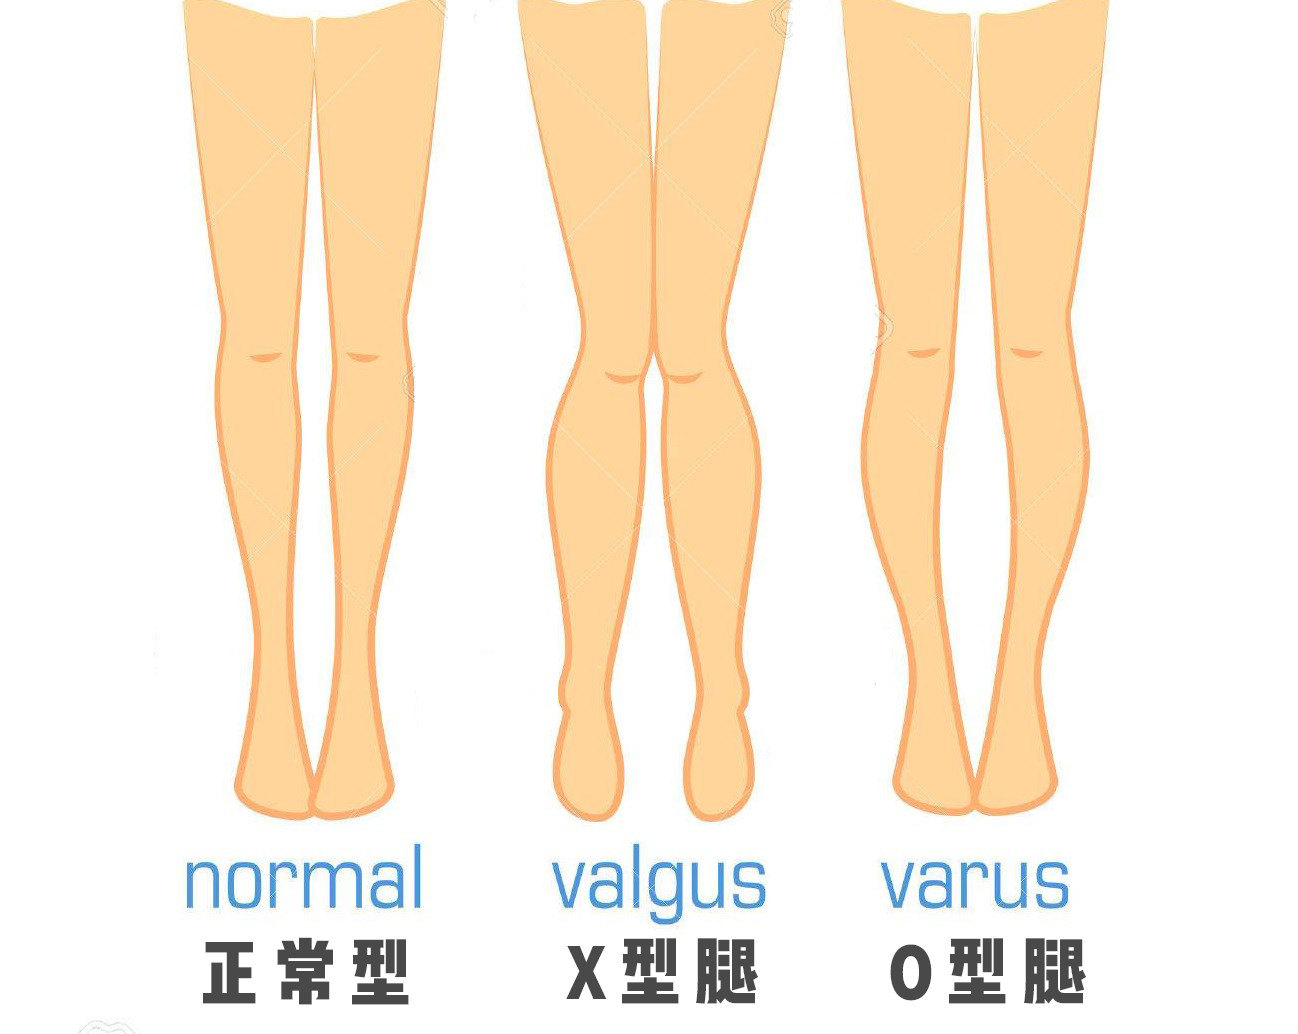 一,正常腿型如果自然站立的时候,双脚和膝盖能同时合拢,说明腿型是